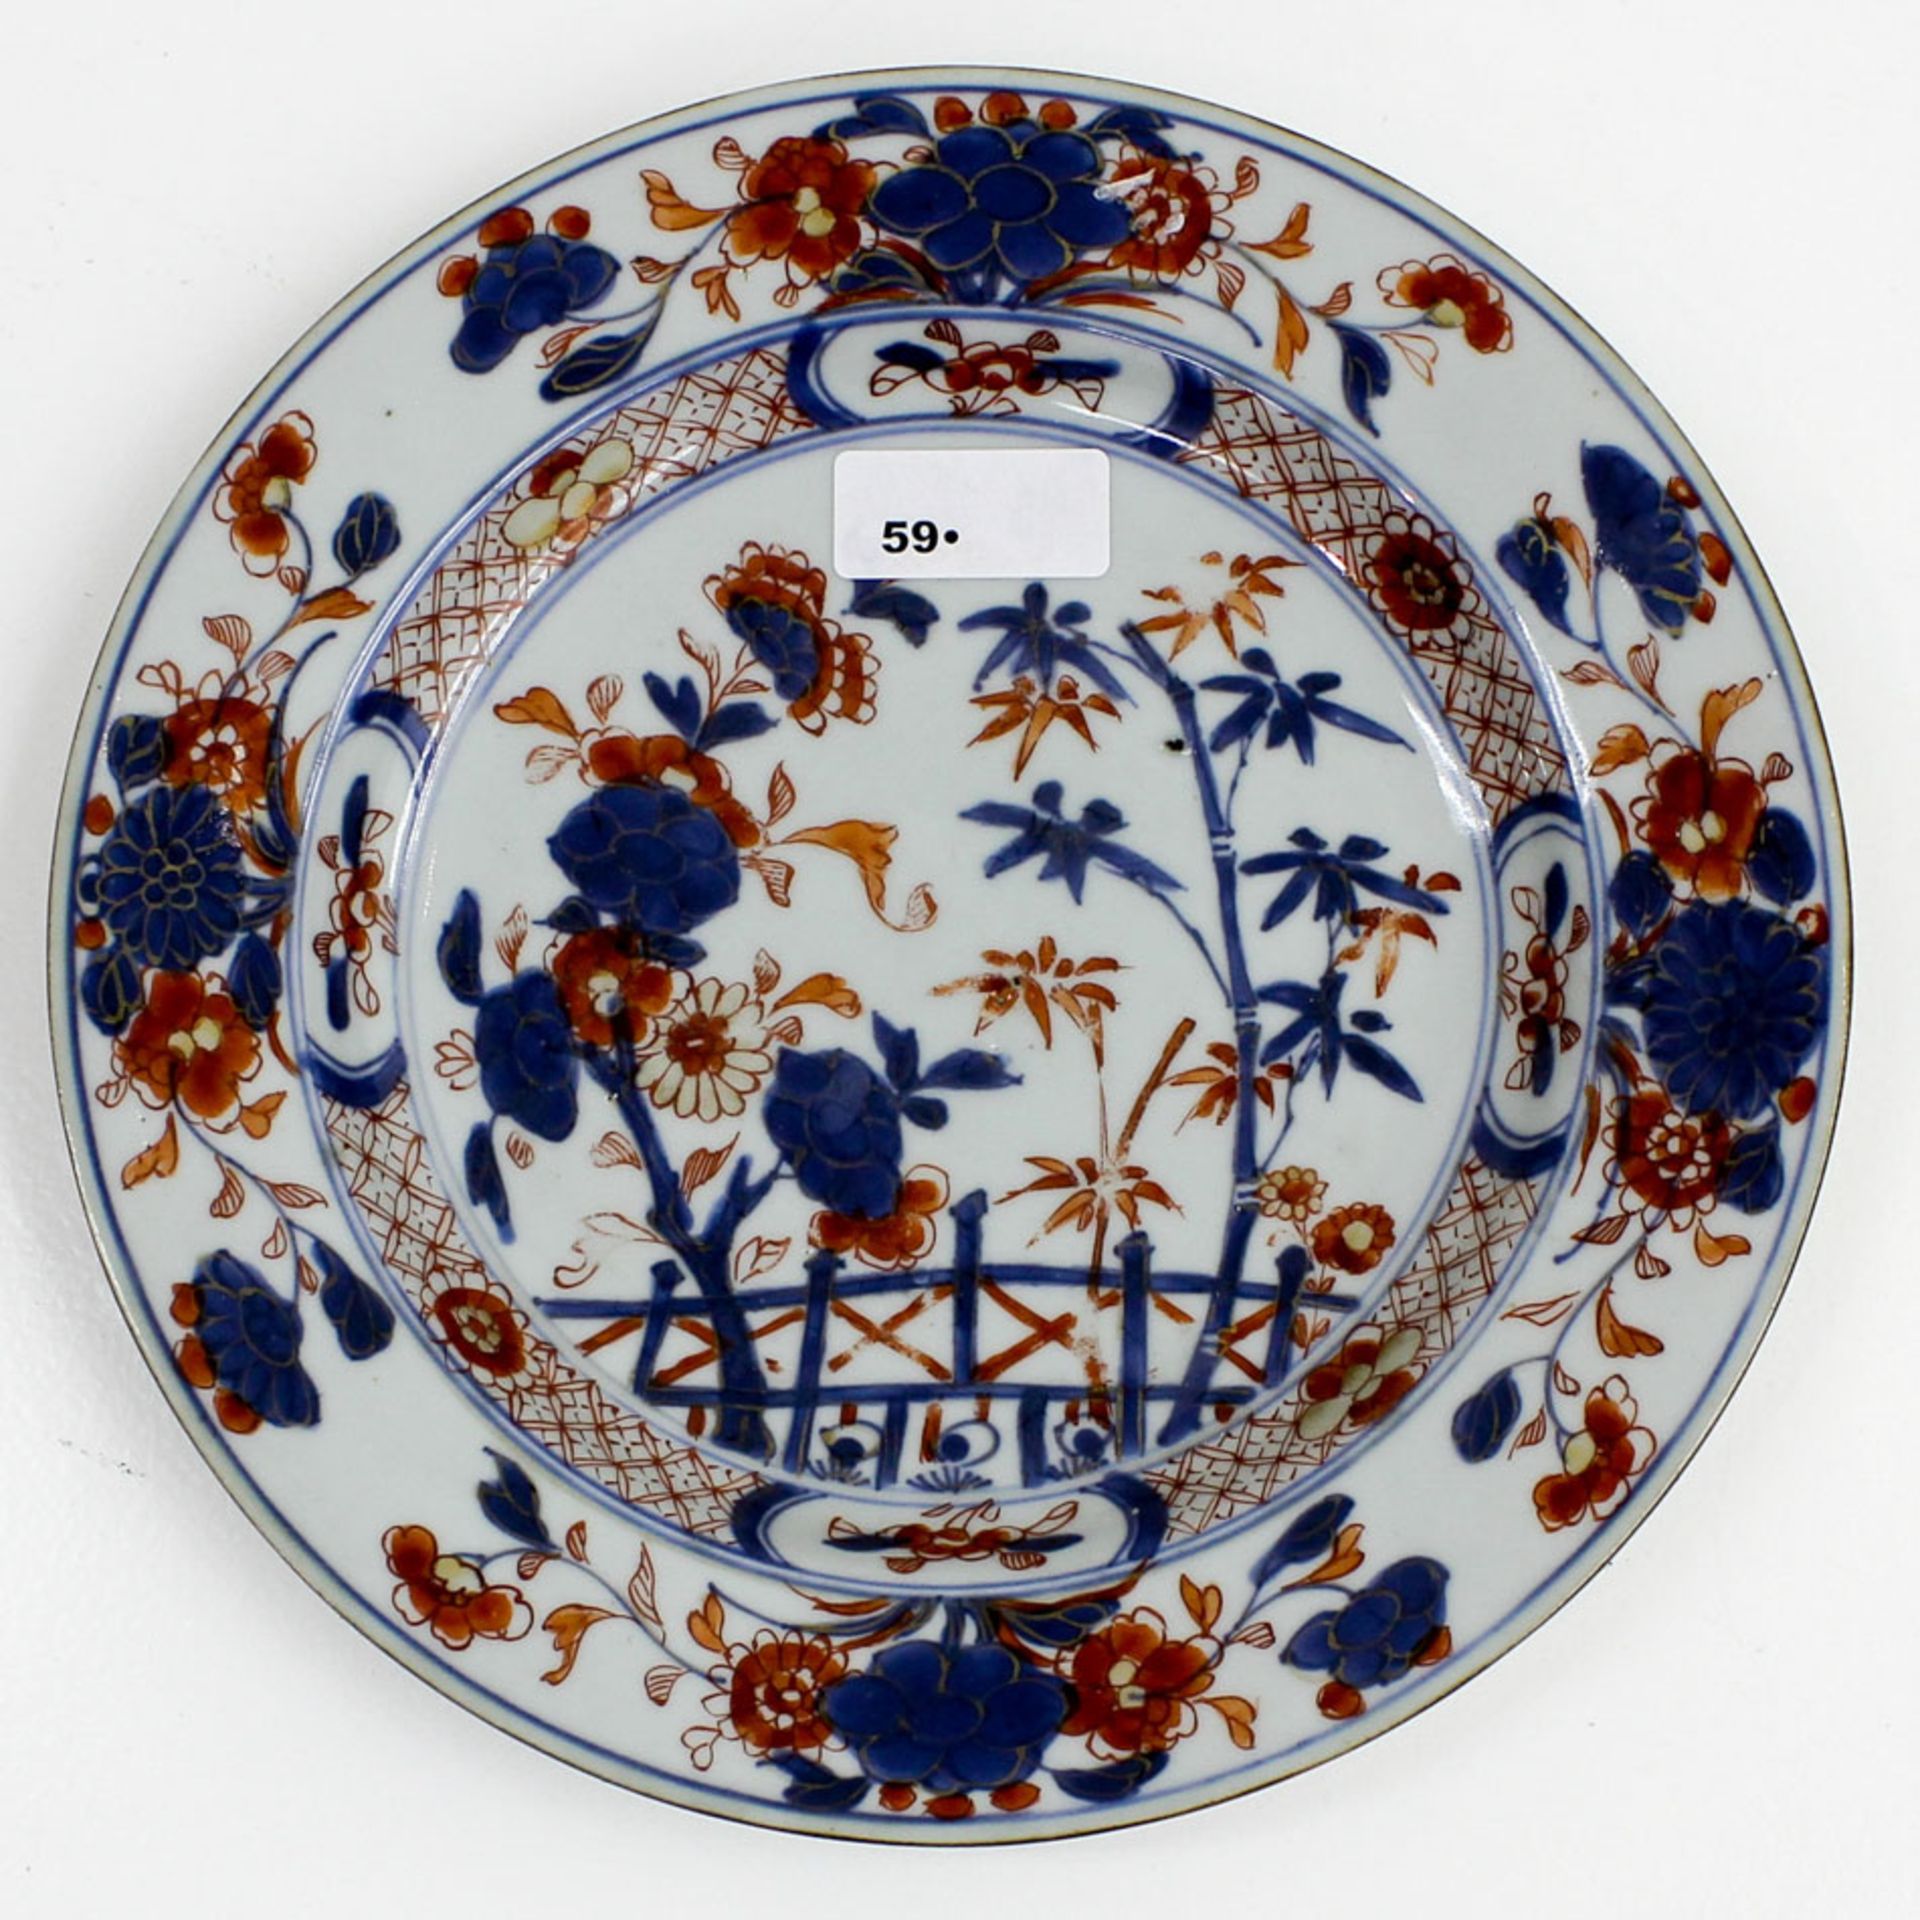 18th Century China Porcelain Imari Plate Chinese Imari Plate, 22 cm in diameter.